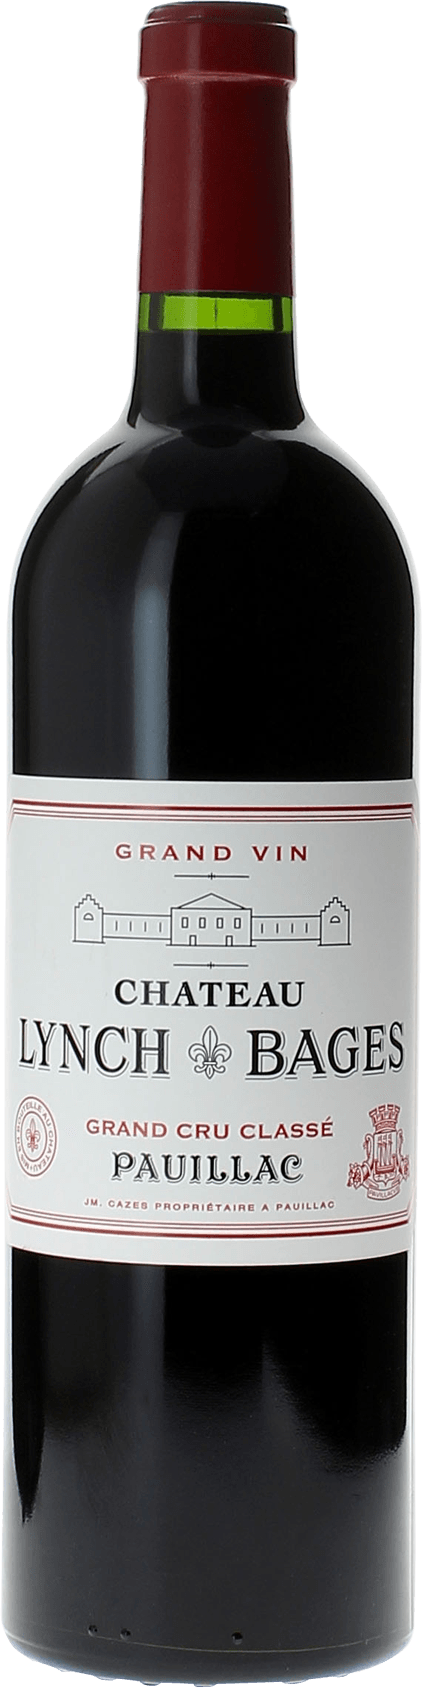 Lynch bages 2014 5 me Grand cru class Pauillac, Bordeaux rouge